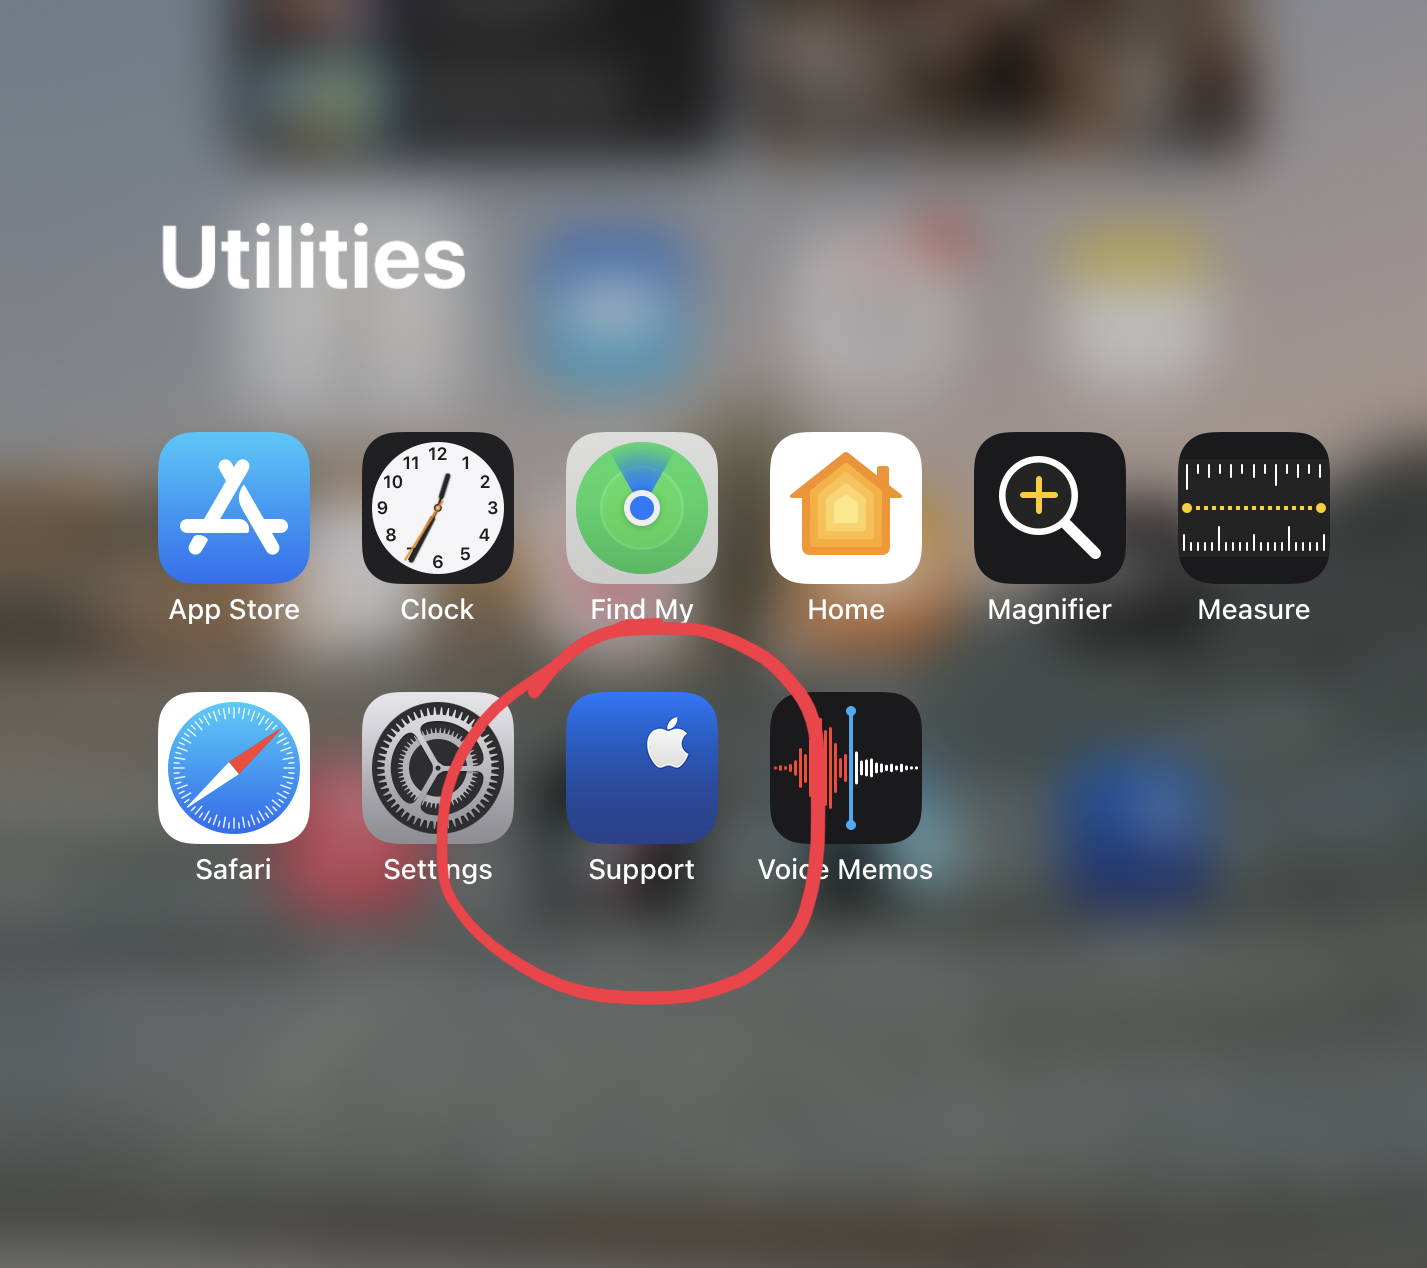 Apple सपोर्ट ऐप के साथ iPad OS यूटिलिटीज़ फ़ोल्डर लाल रंग में घेरा गया है।